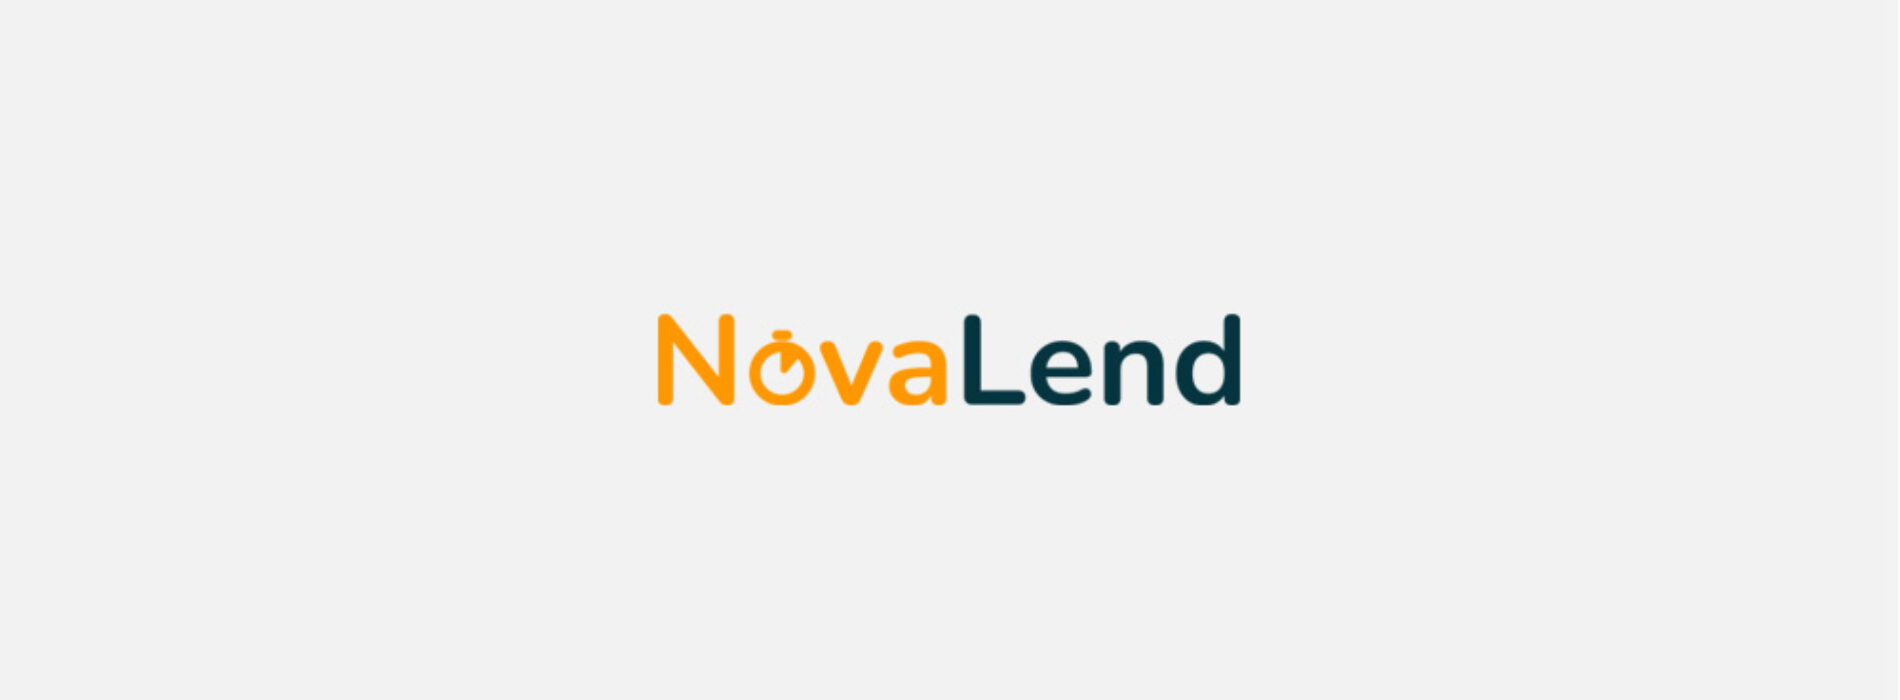 NovaLend — recenzja oferty i opinie